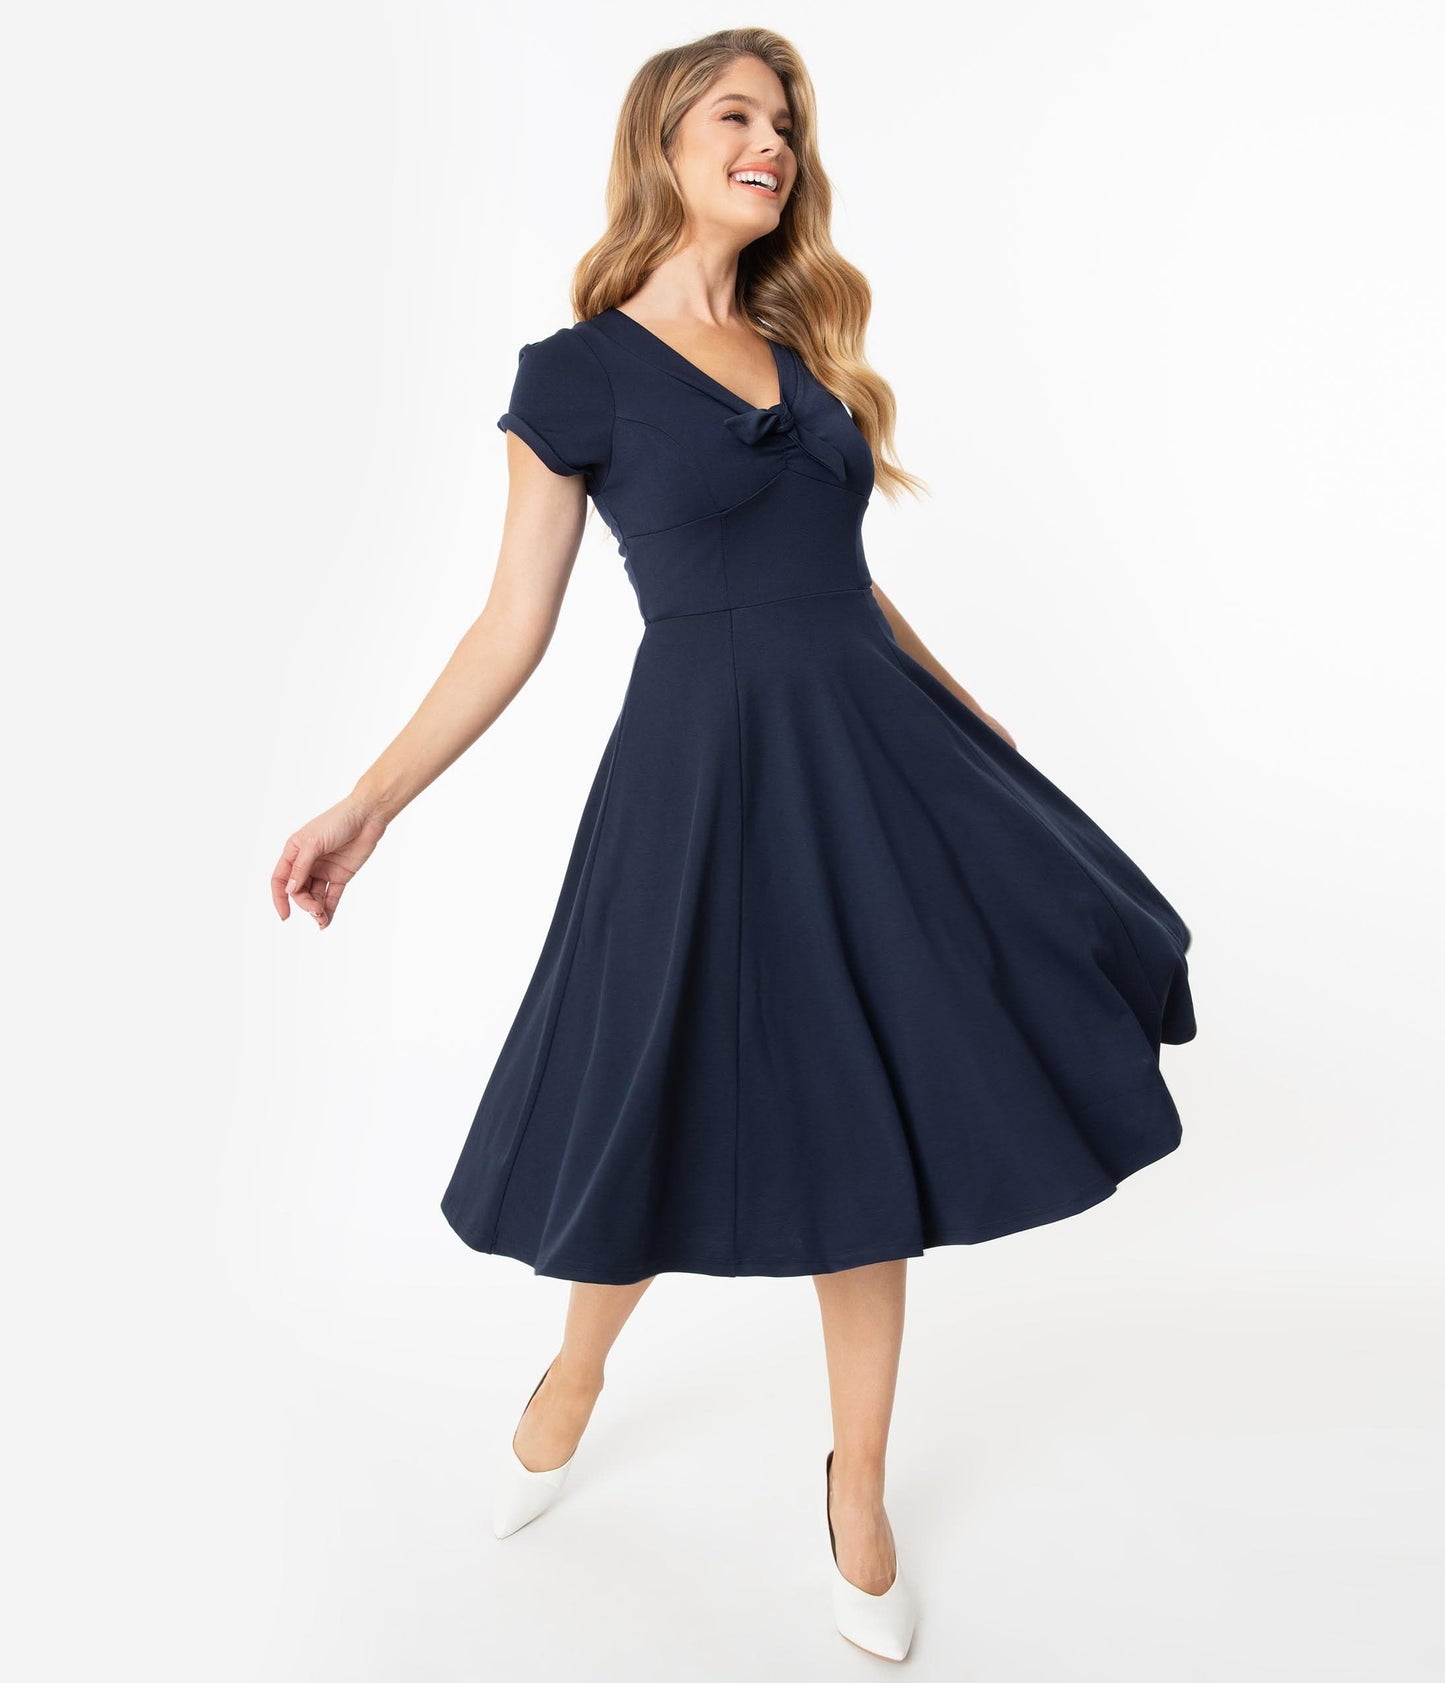 Unique Vintage 1940s Style Navy Blue Natalie Swing Dress